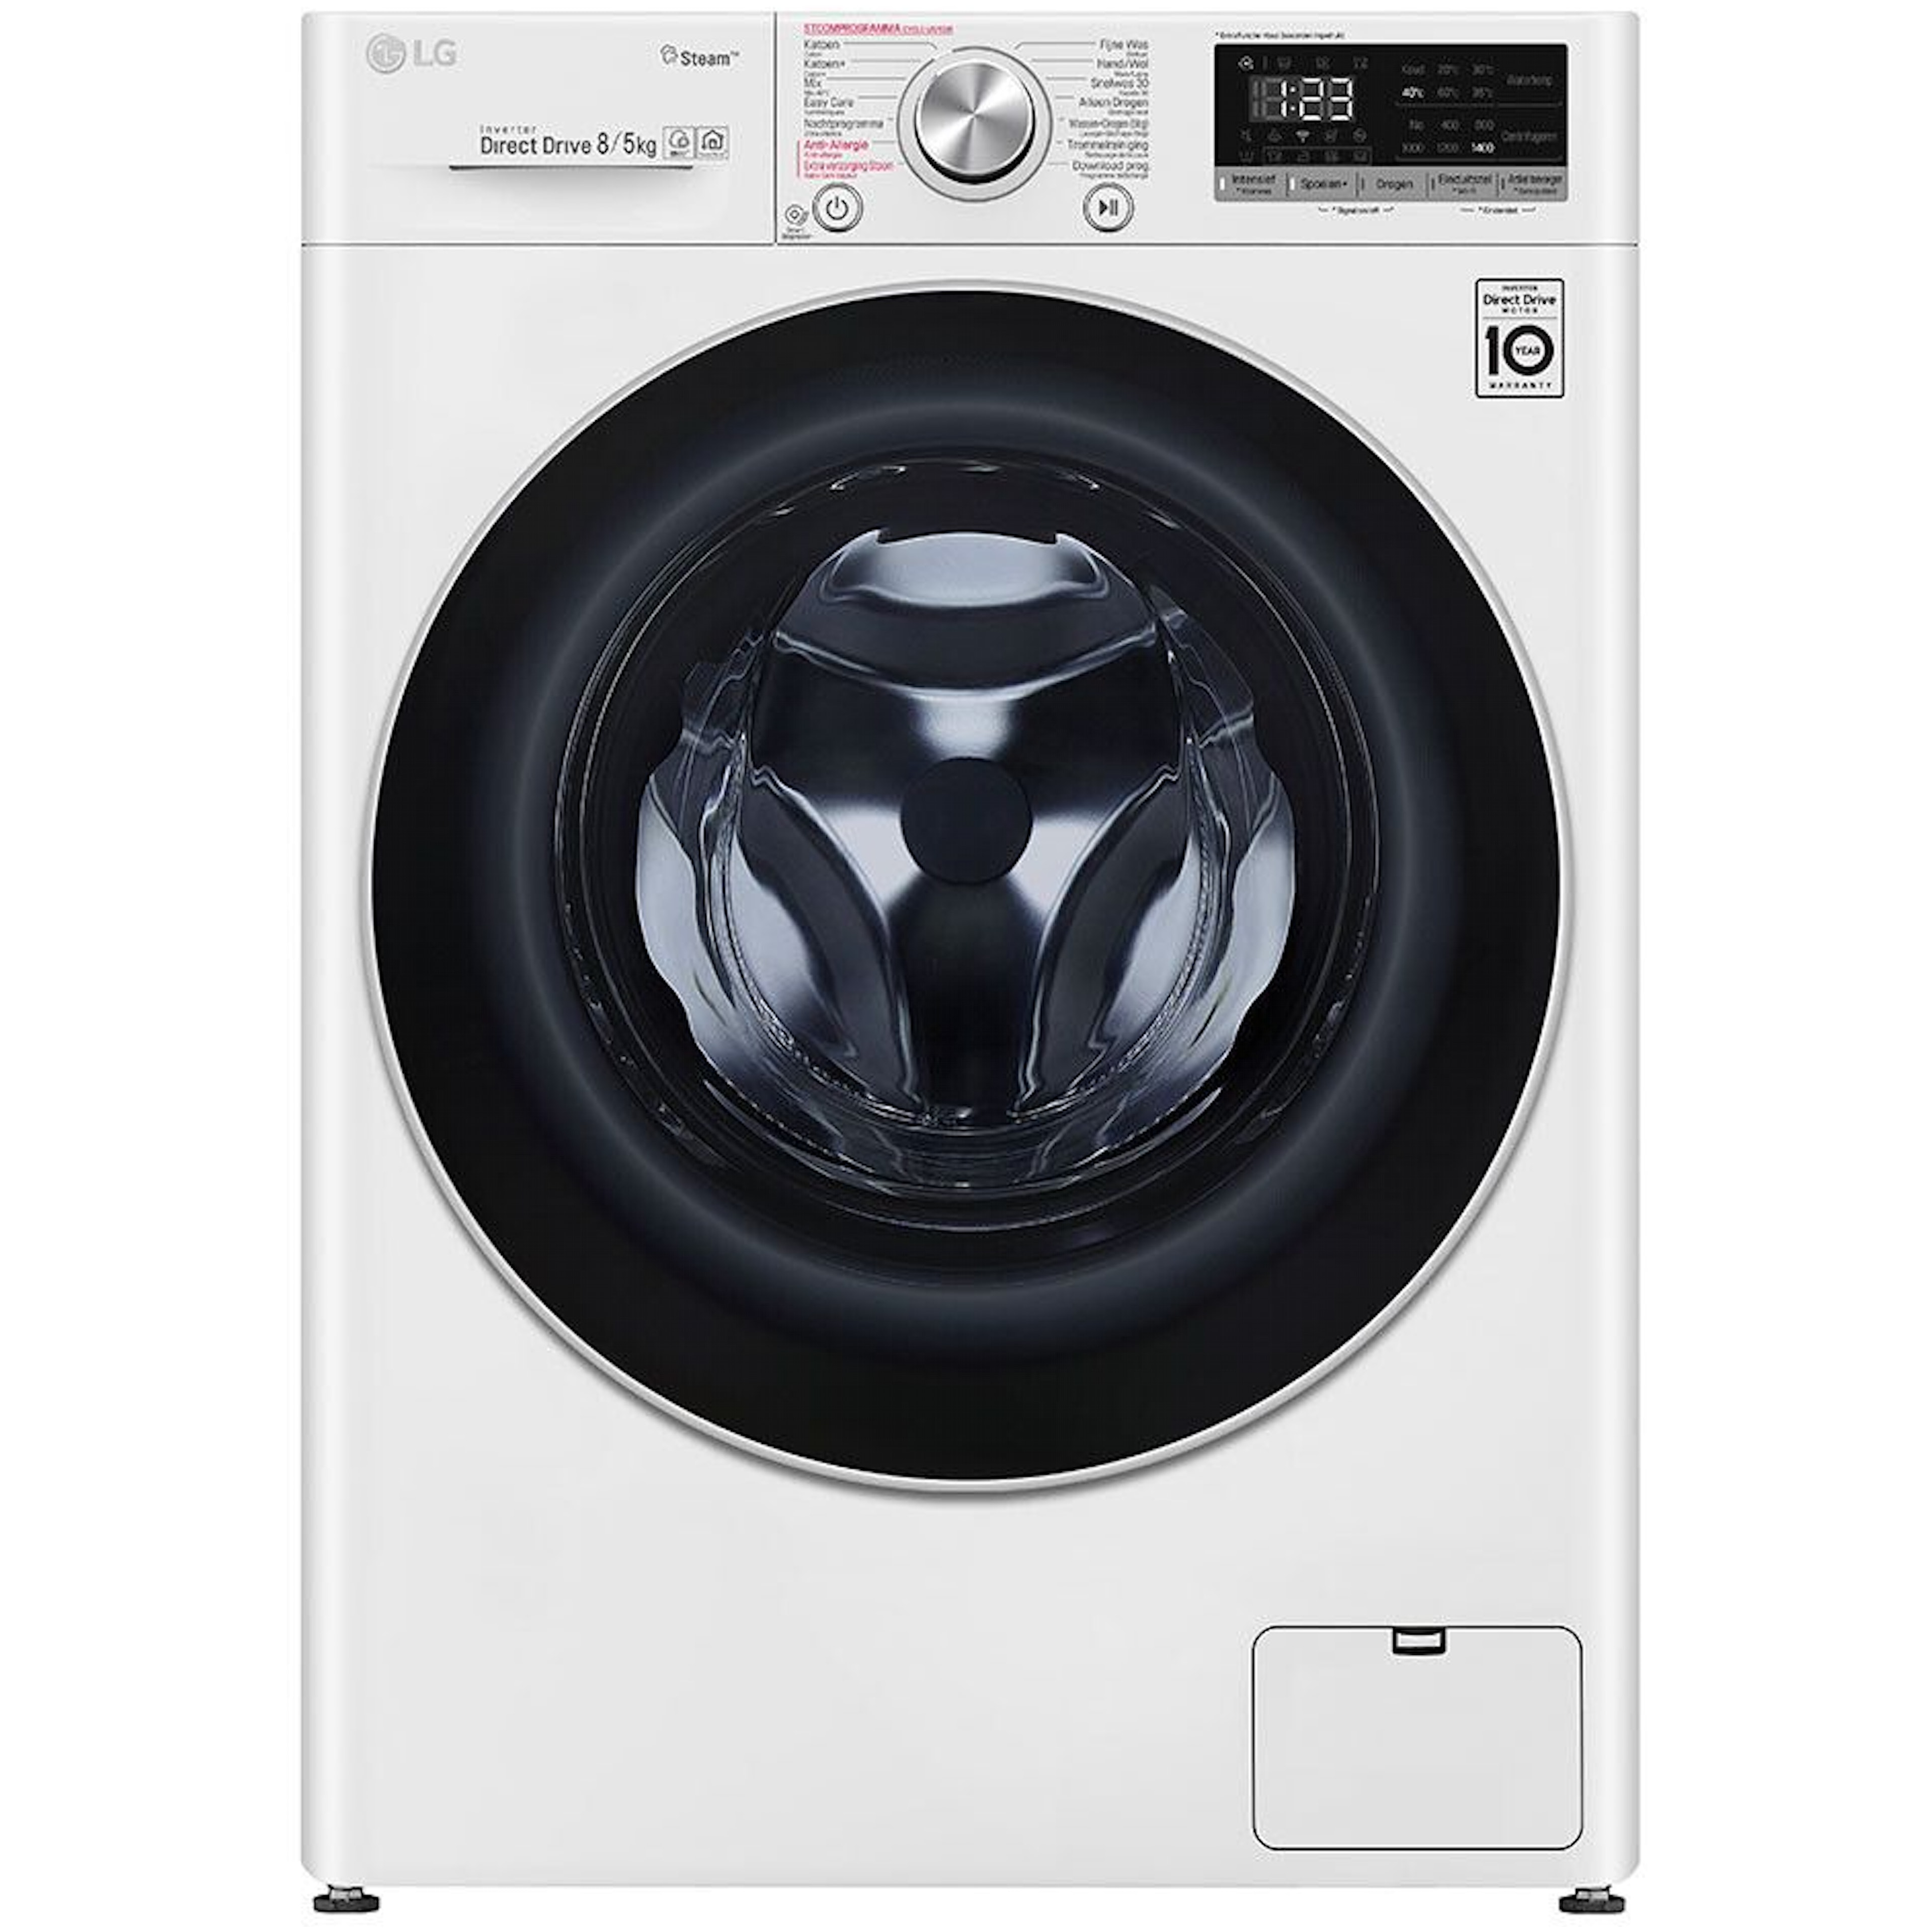 LG wasmachine F4DN508S1 afbeelding 3